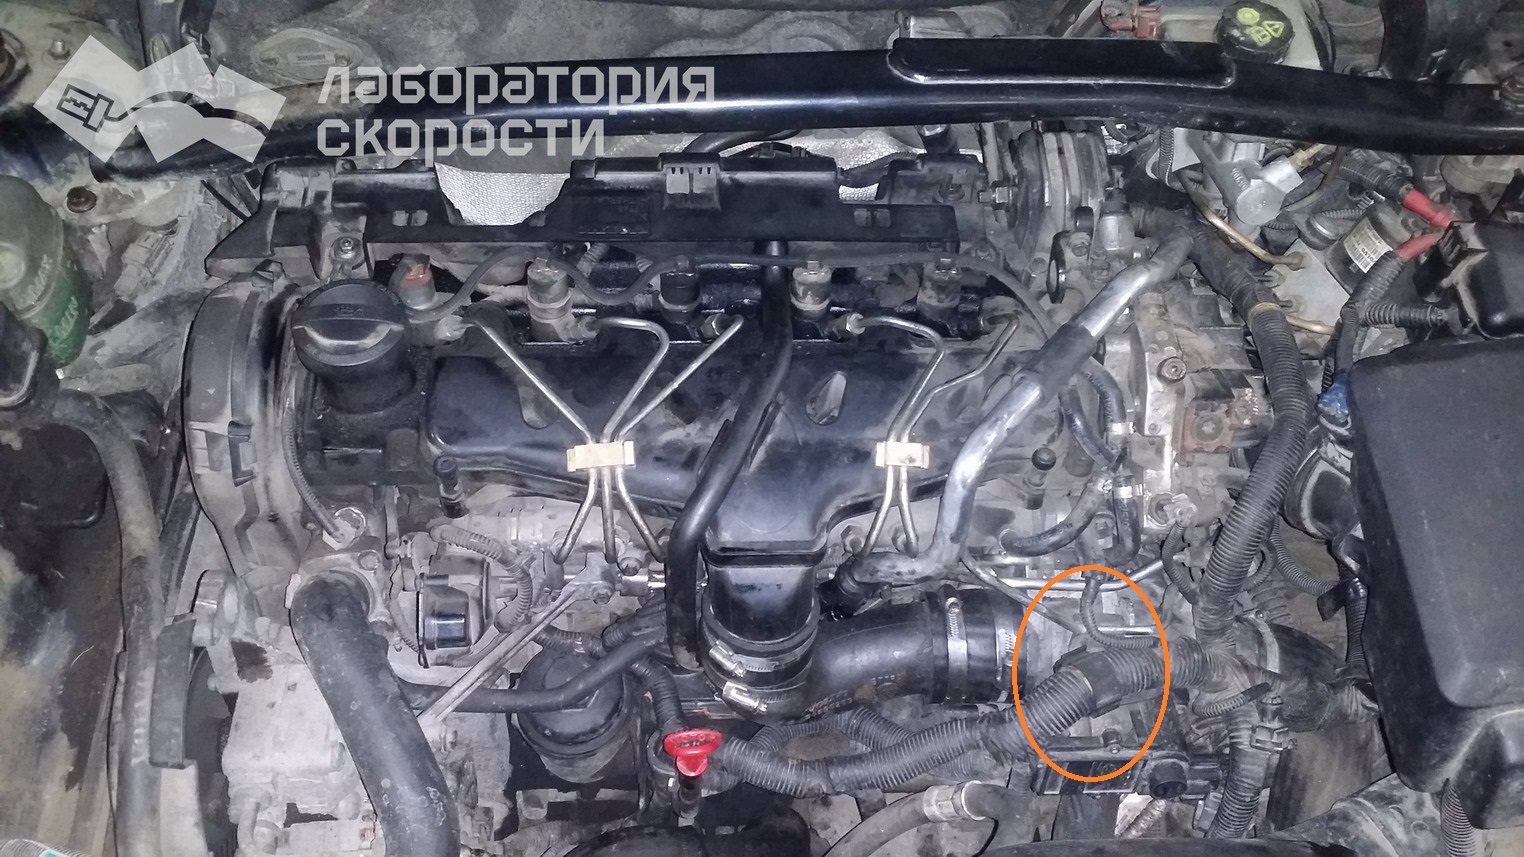 Чип-тюнинг Volvo XC 90. Удаление сажевого фильтра и клапана ЕГР. Отчет